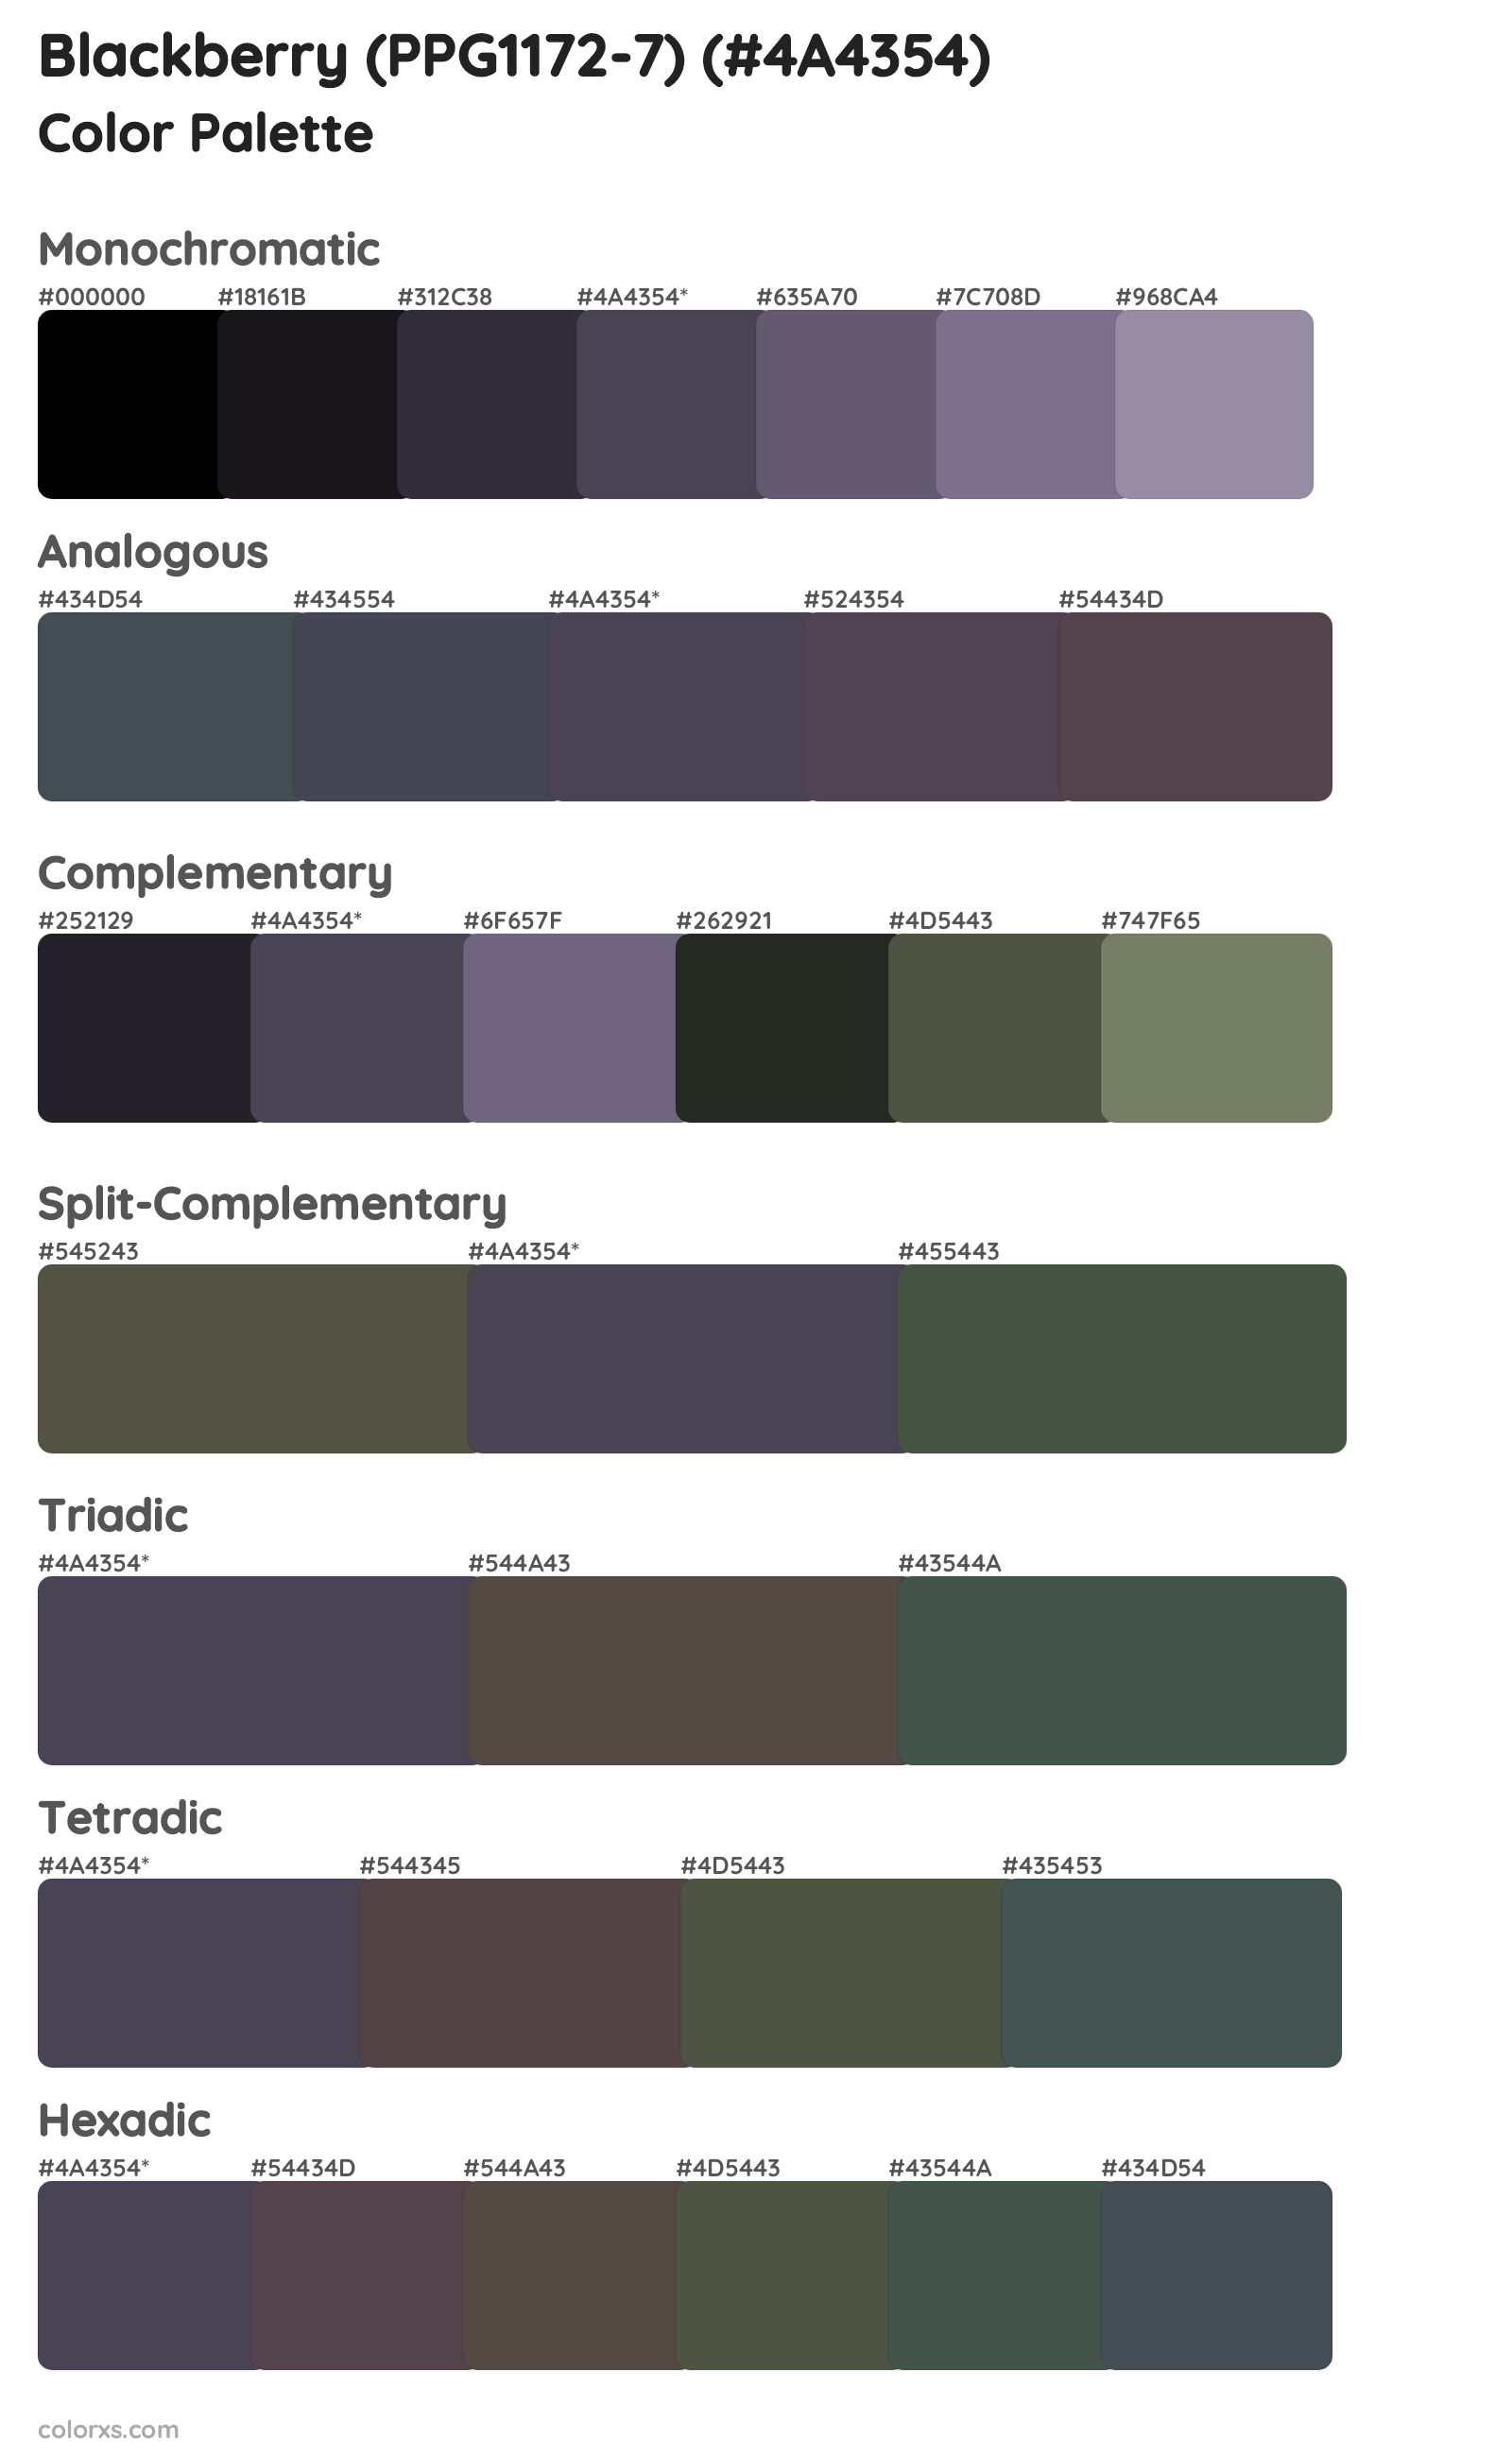 Blackberry (PPG1172-7) Color Scheme Palettes